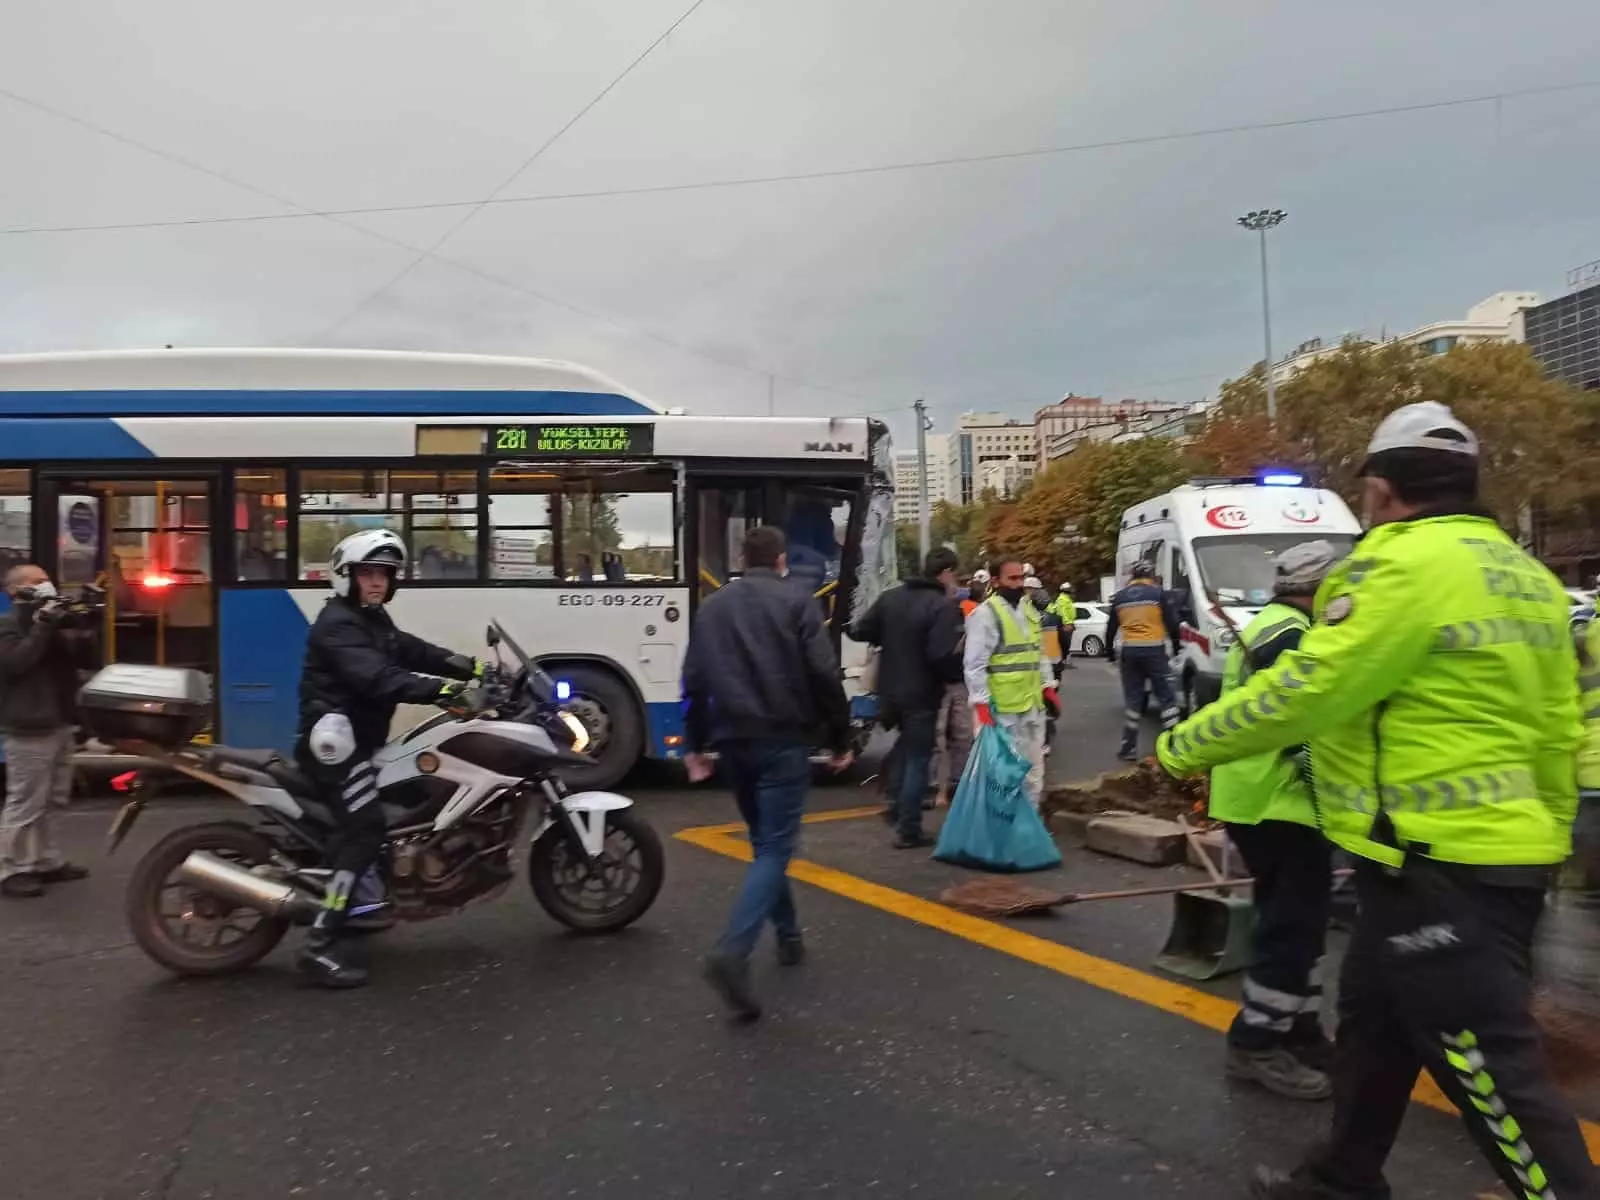 Ankara kızılay'da, iki otobüs çarpıştı özel halk otobüsü kavşakta ankara büyükşehir belediyesi'ne ait ego otobüsüne çarptı, kazada 17 kişi yaralandı.